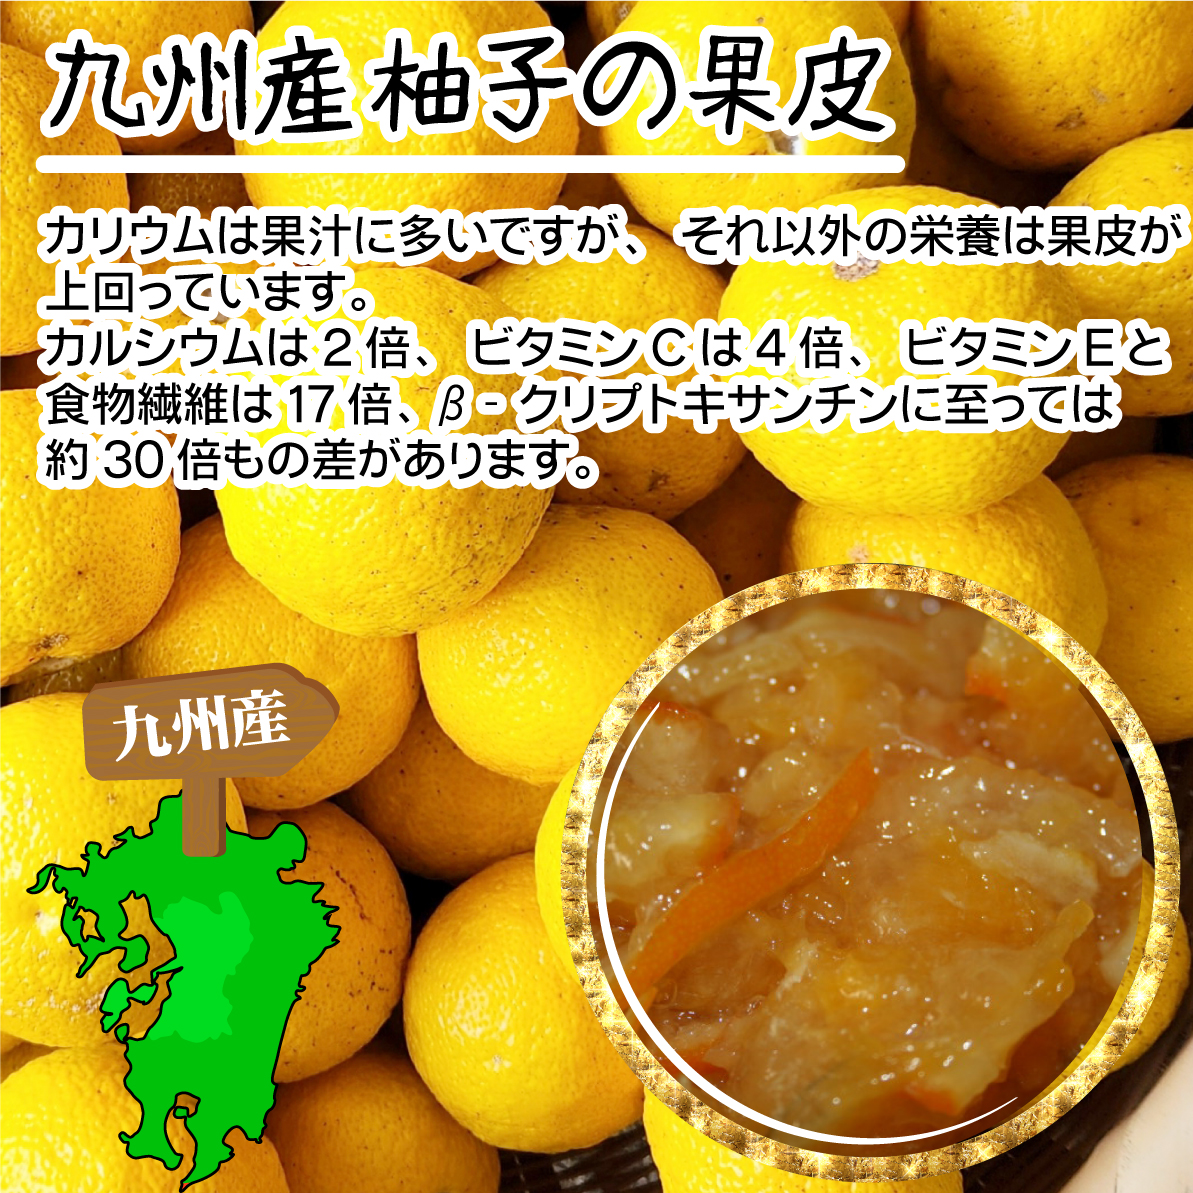 グルメ・飲料 水・ソフトドリンク 柚子茶